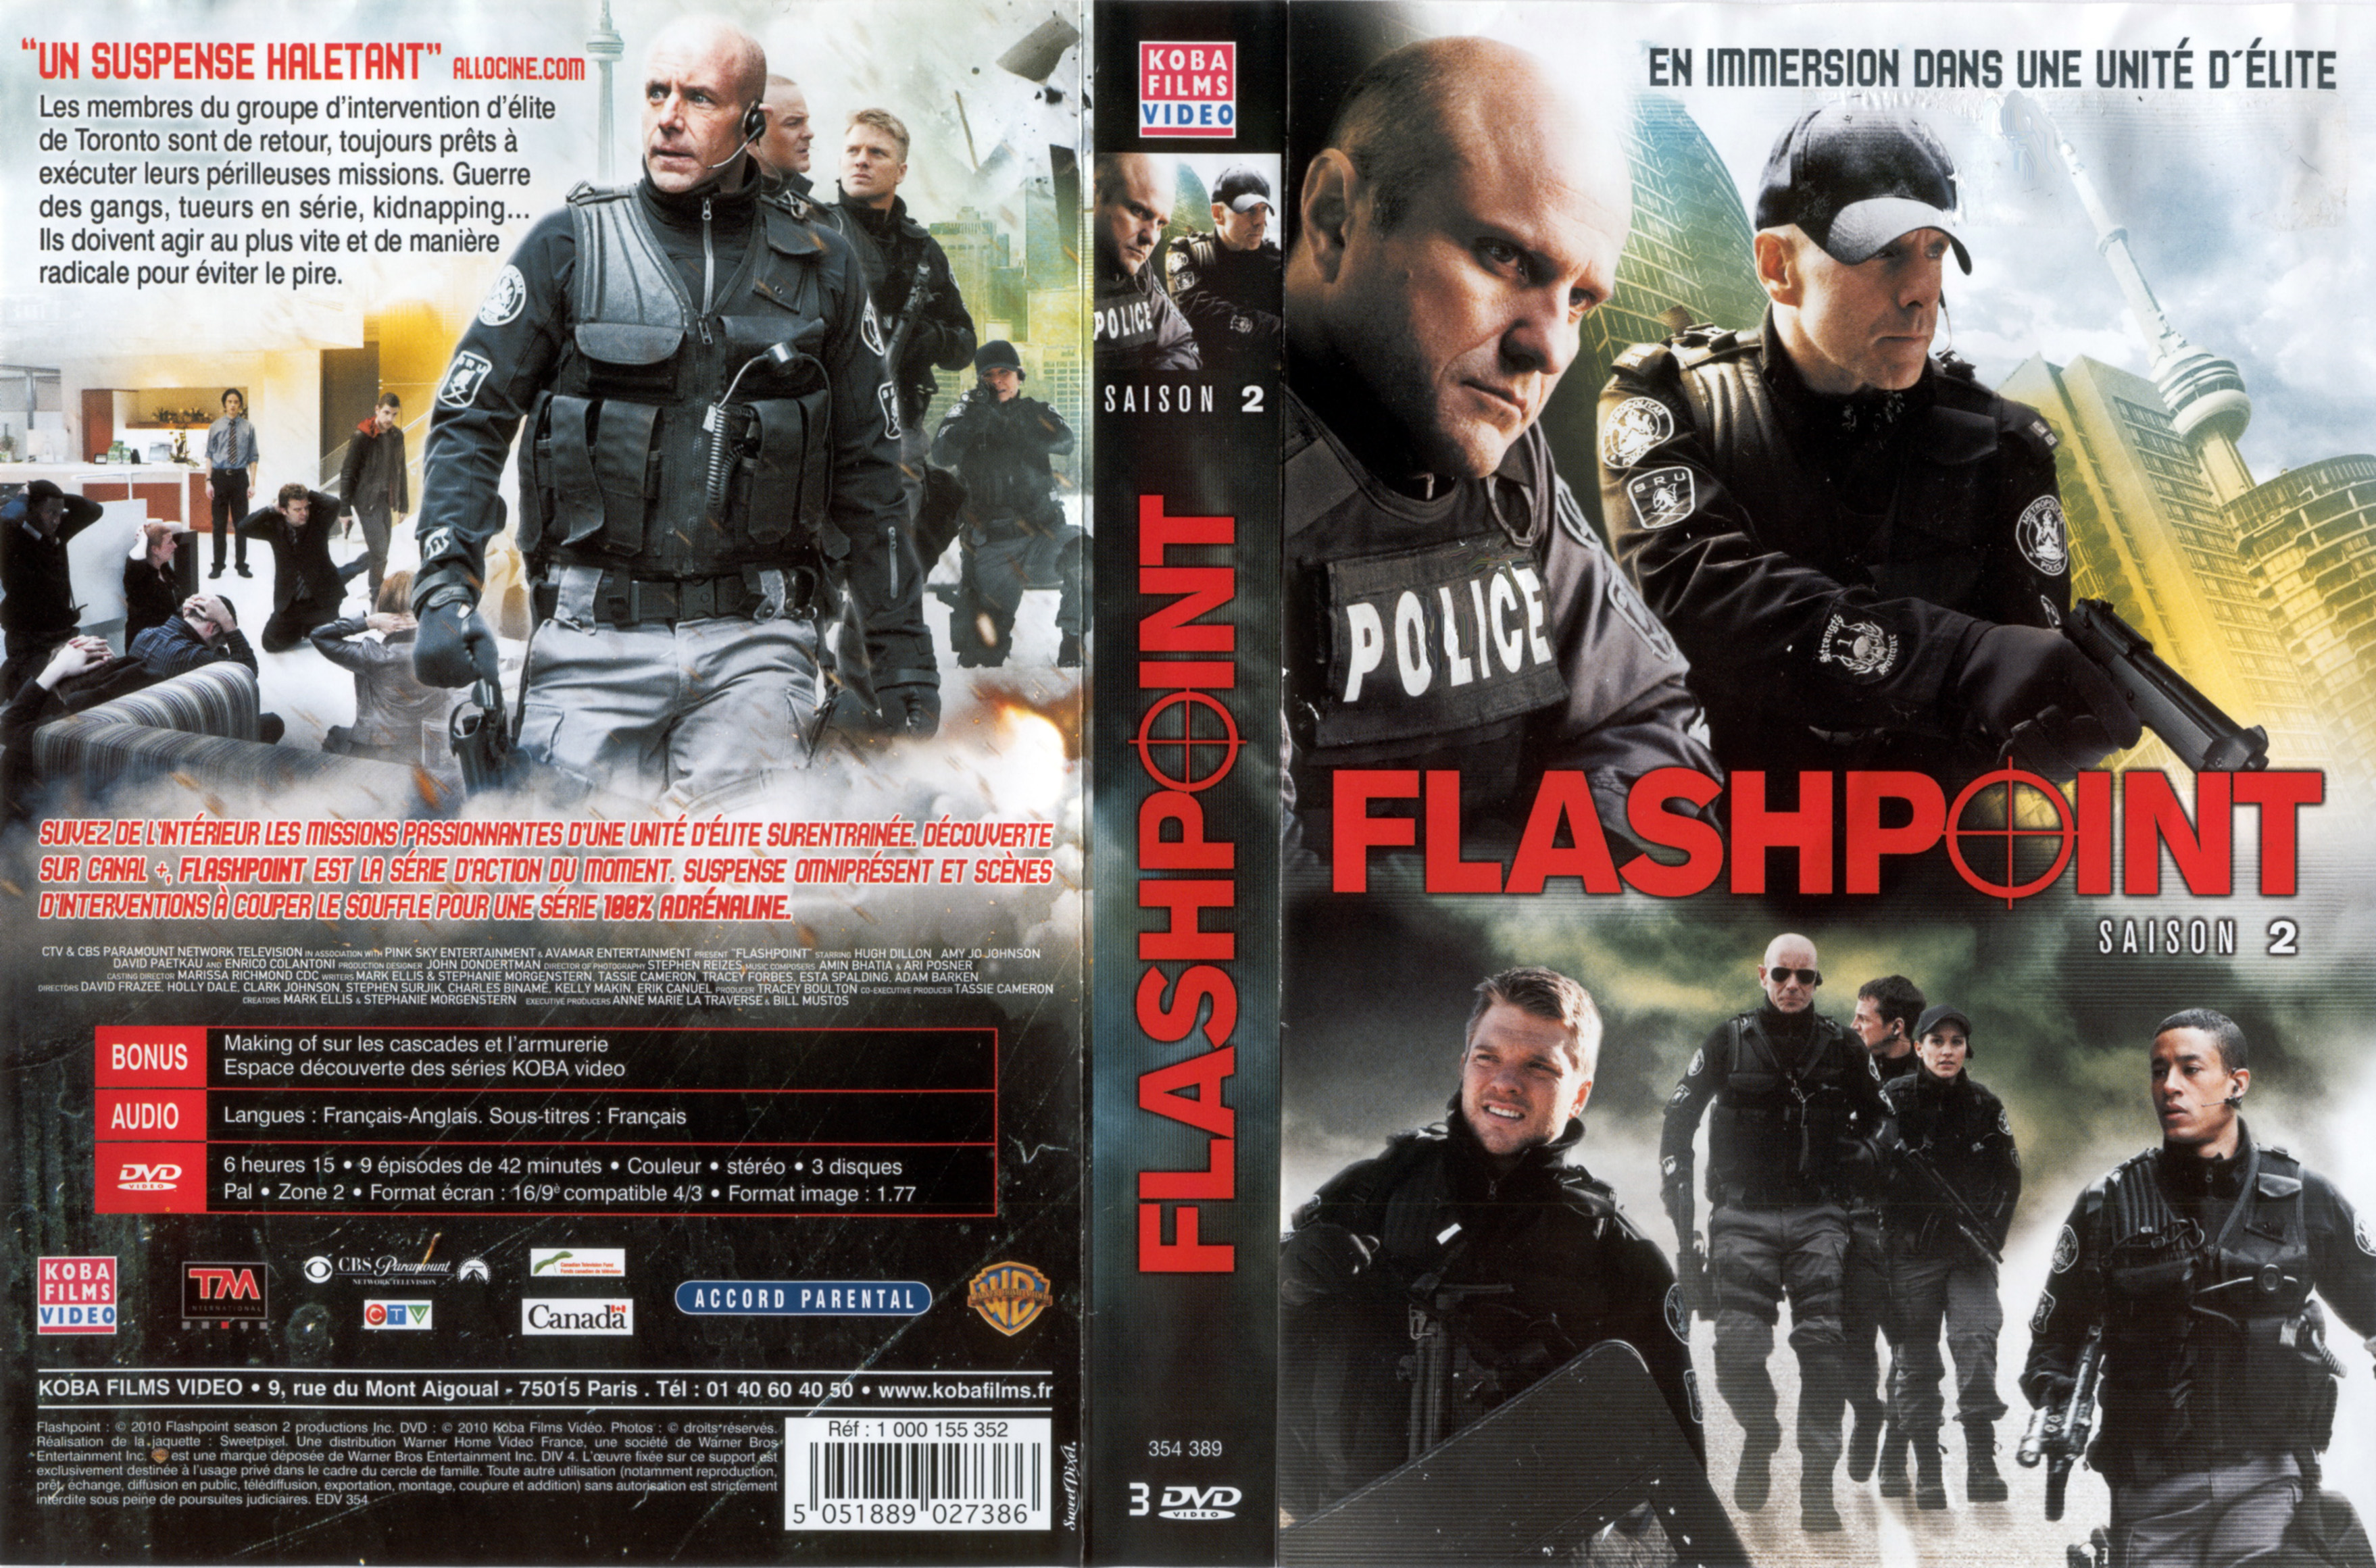 Jaquette DVD Flashpoint Saison 2 COFFRET